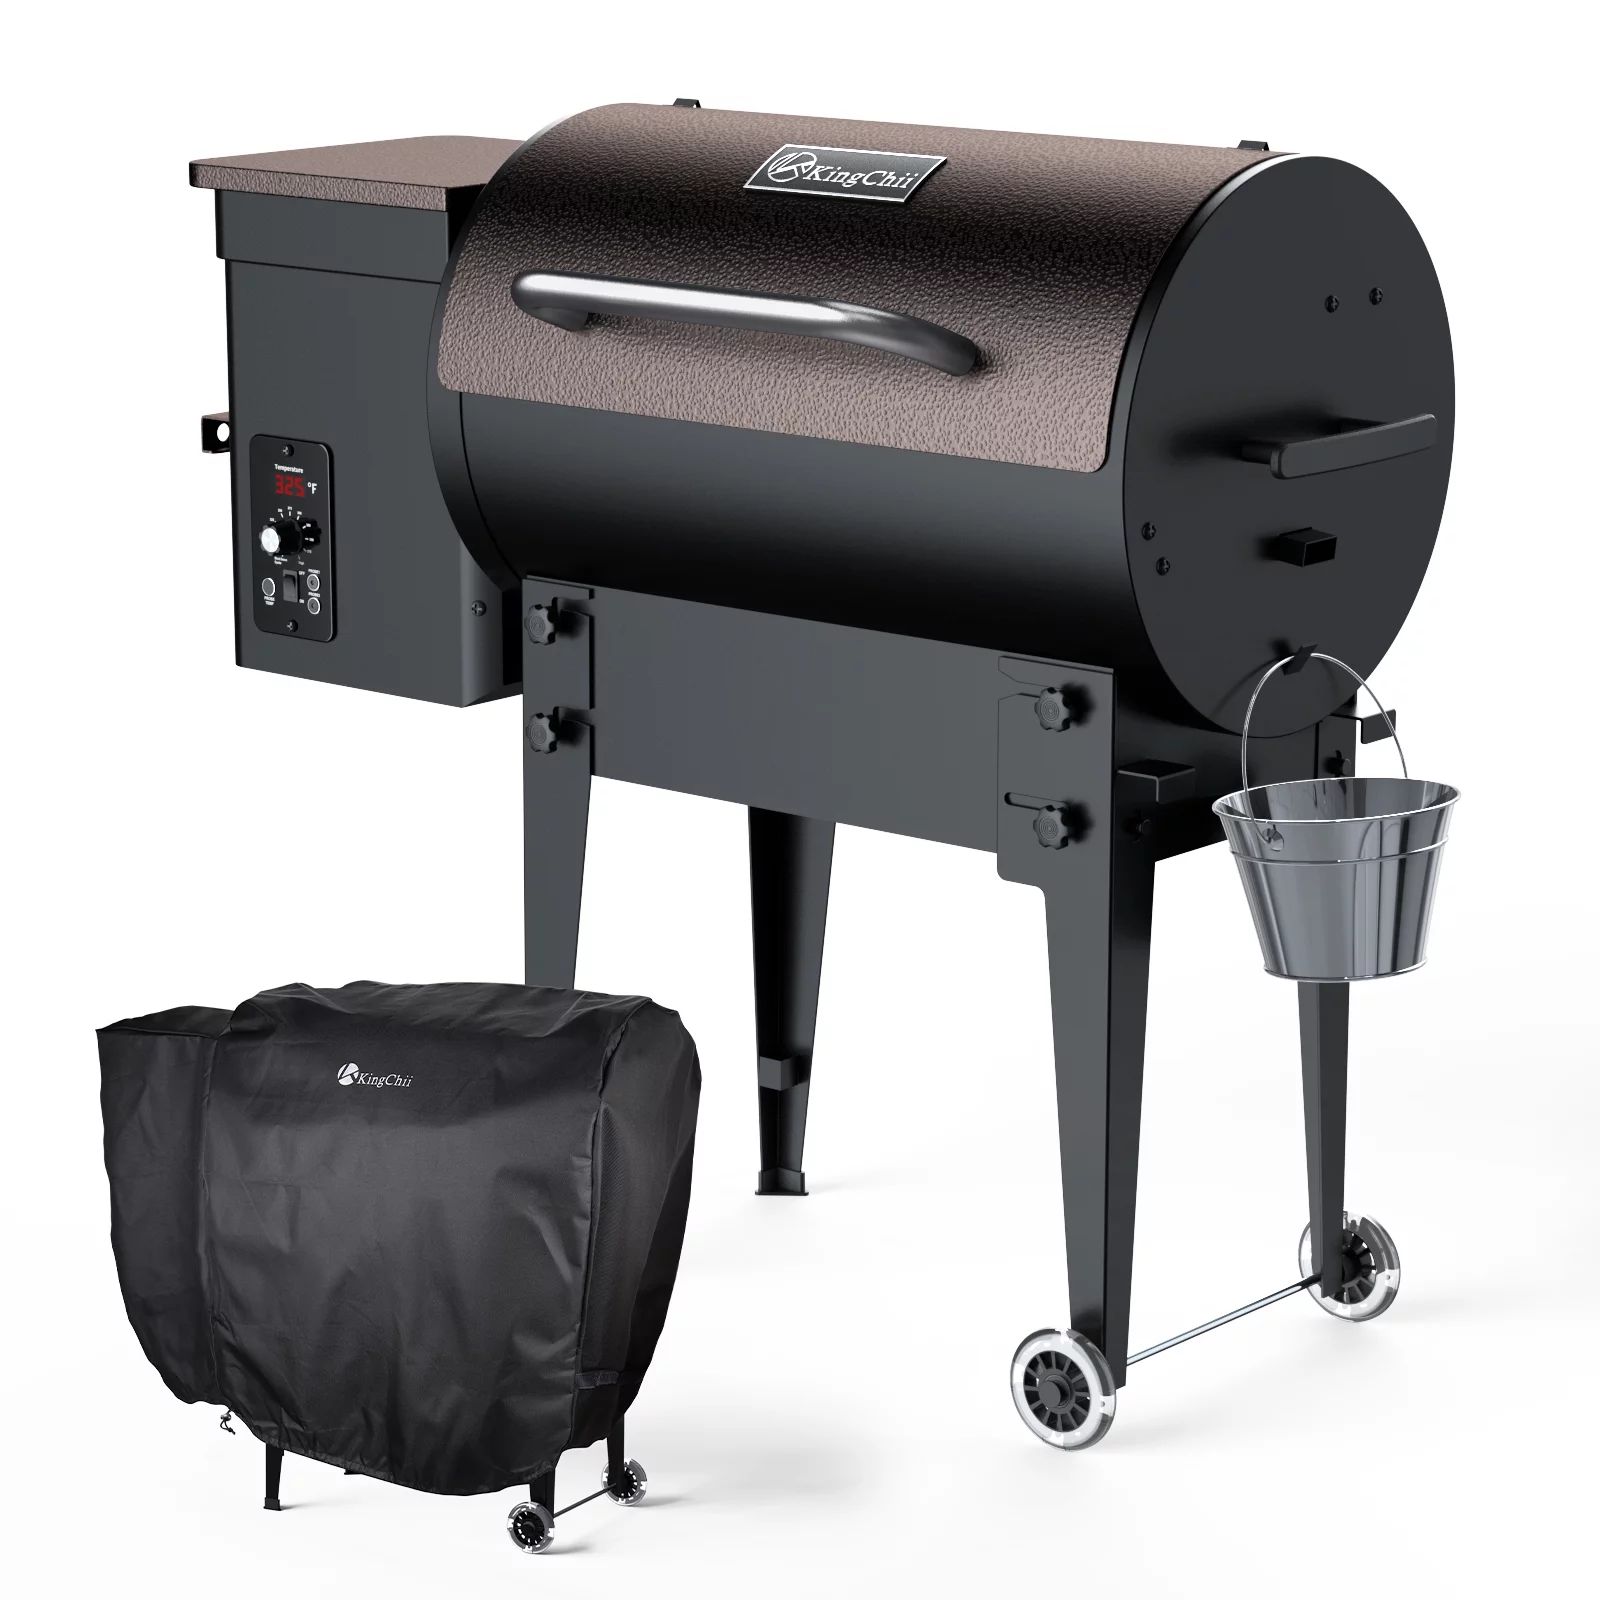 KingChii 420 sq. in Wood Pellet Smoker & Grill BBQ with Auto Temperature Controls, Folding Legs f... | Walmart (US)